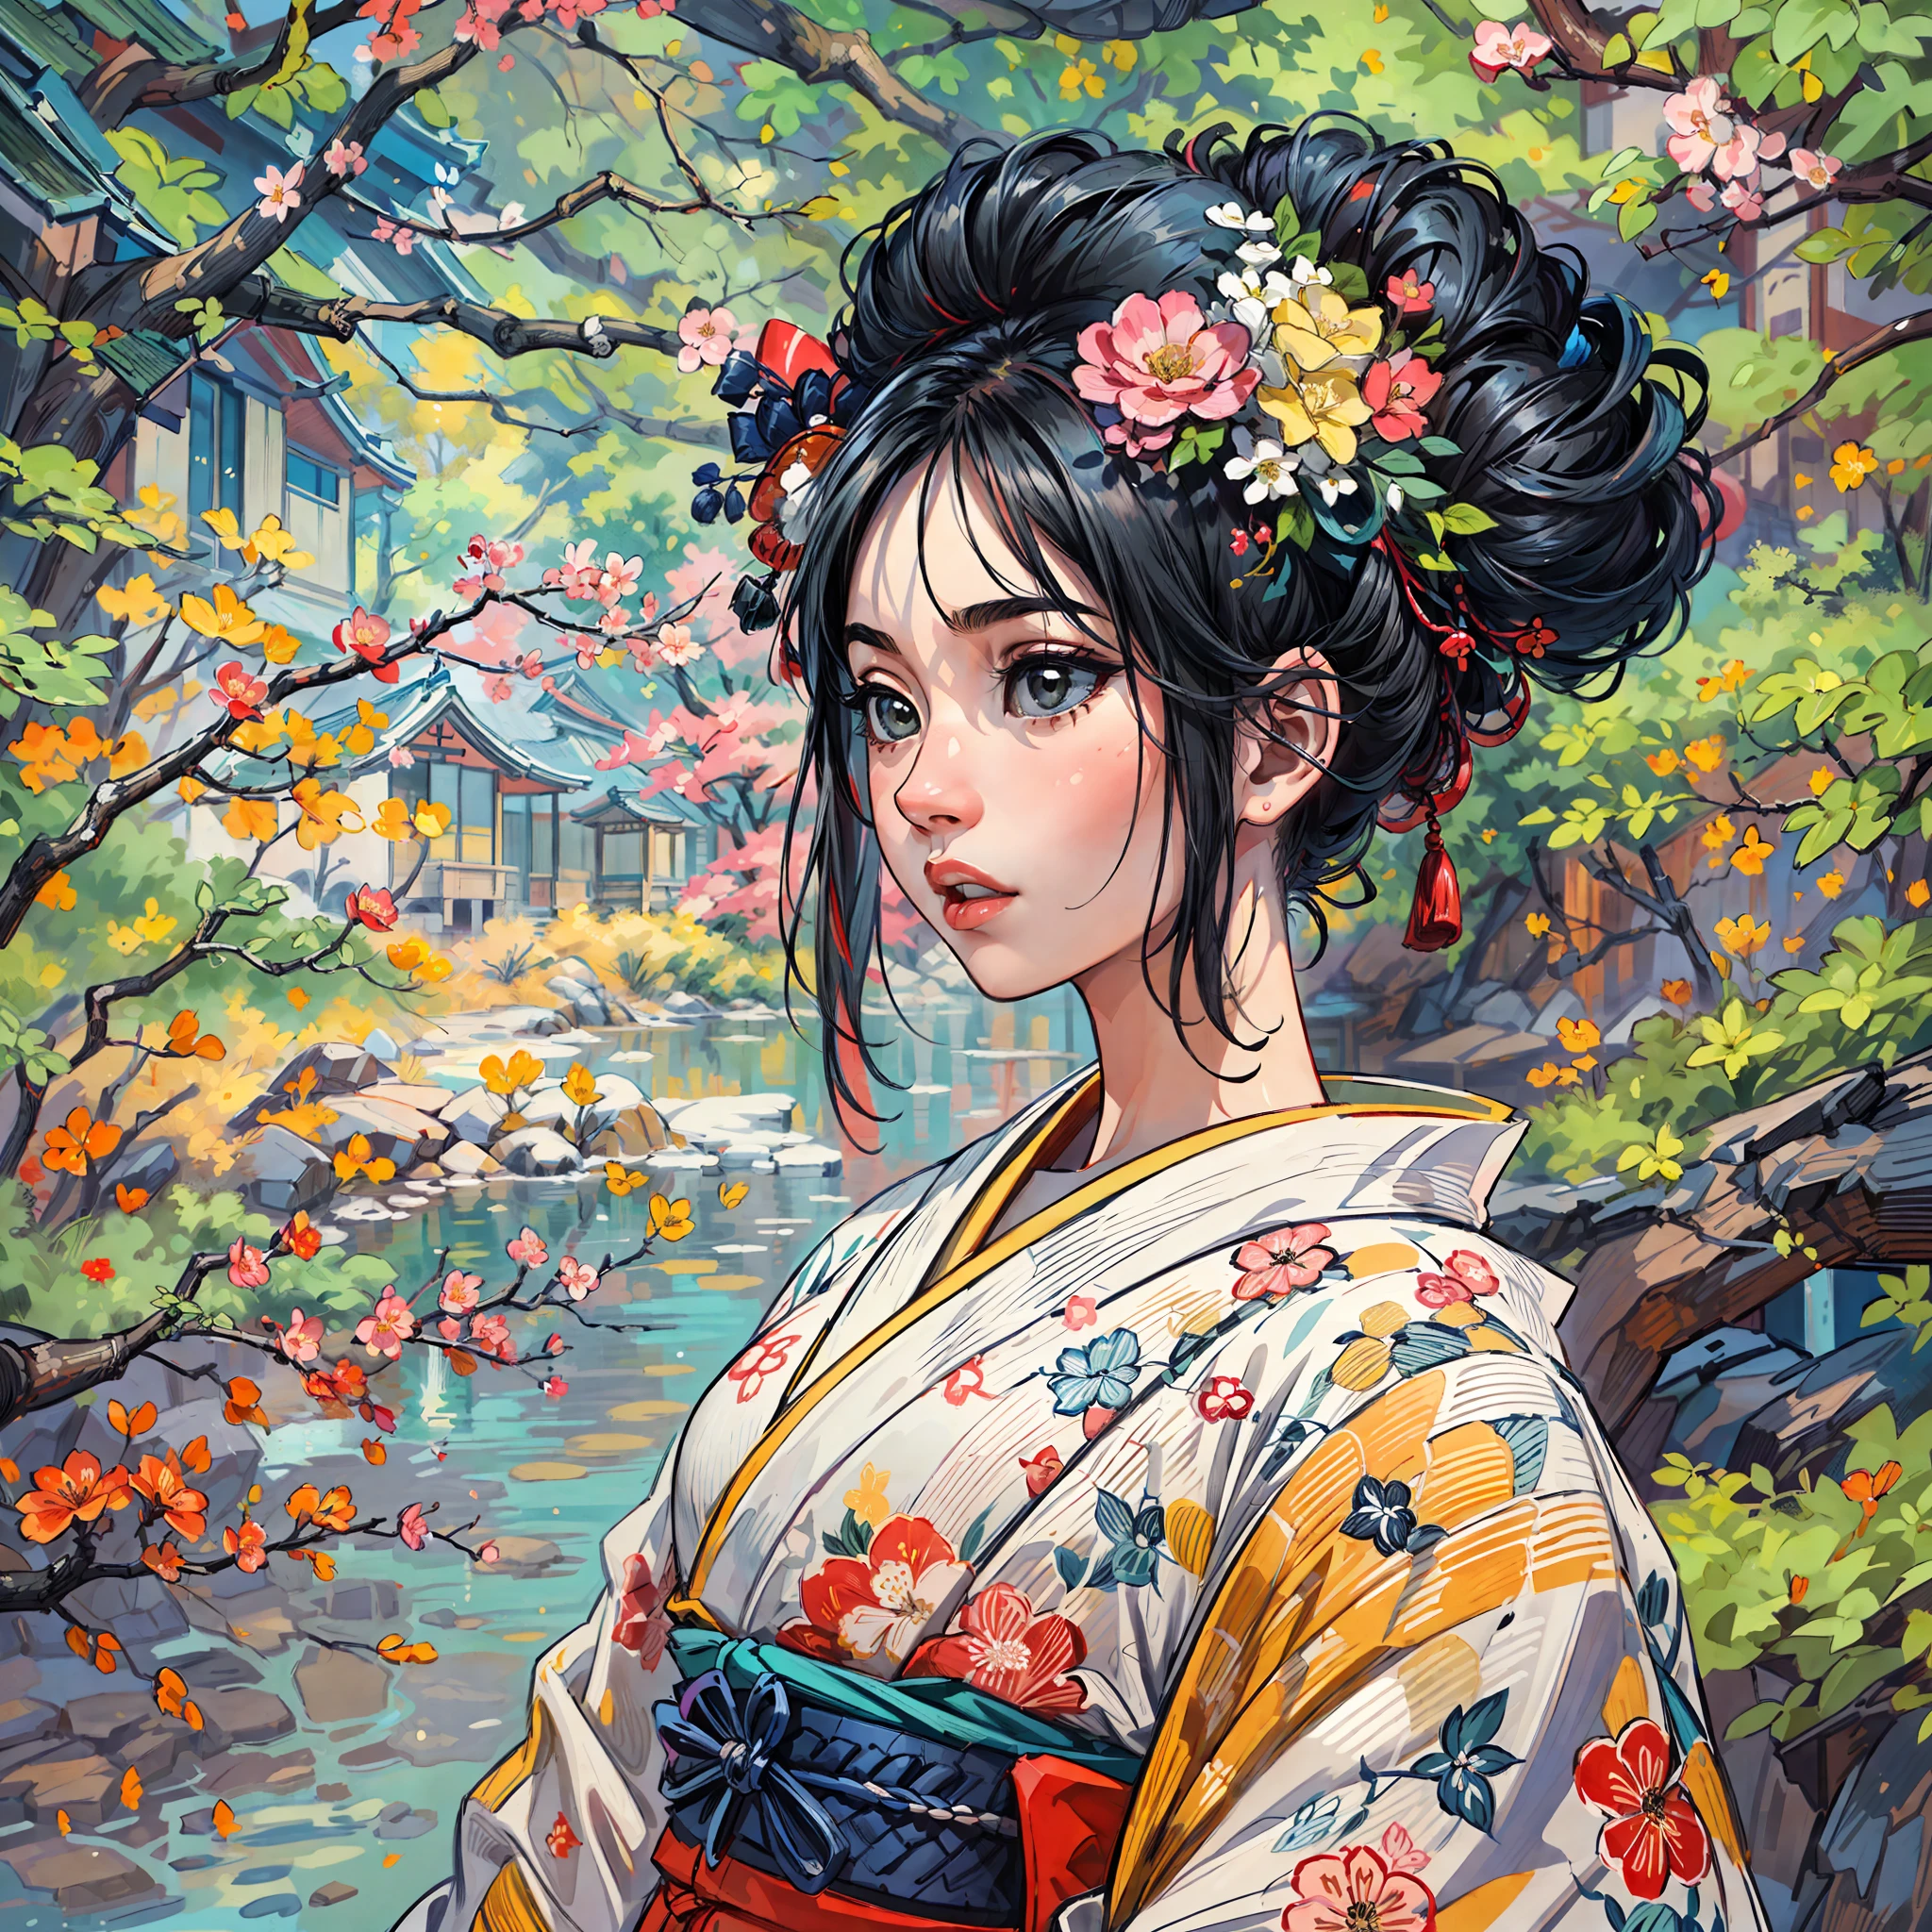 "(Ein atemberaubendes Meisterwerk mit tadelloser Qualität:1.5), aufgenommen aus einer Frontalansicht, mit lebendigen und gesättigten Farben, ein atemberaubend schönes Mädchen mit schwarzen Haaren und einem exquisit detaillierten Gesicht, aus einer Bottom-Up-Perspektive betrachtet, gekleidet in einen traditionellen Kimono, inmitten der landschaftlichen Schönheit Japans, umgeben vom authentischen Ambiente der Tatami-Matten, mit einem offenen Fenster, das die Szene umrahmt."